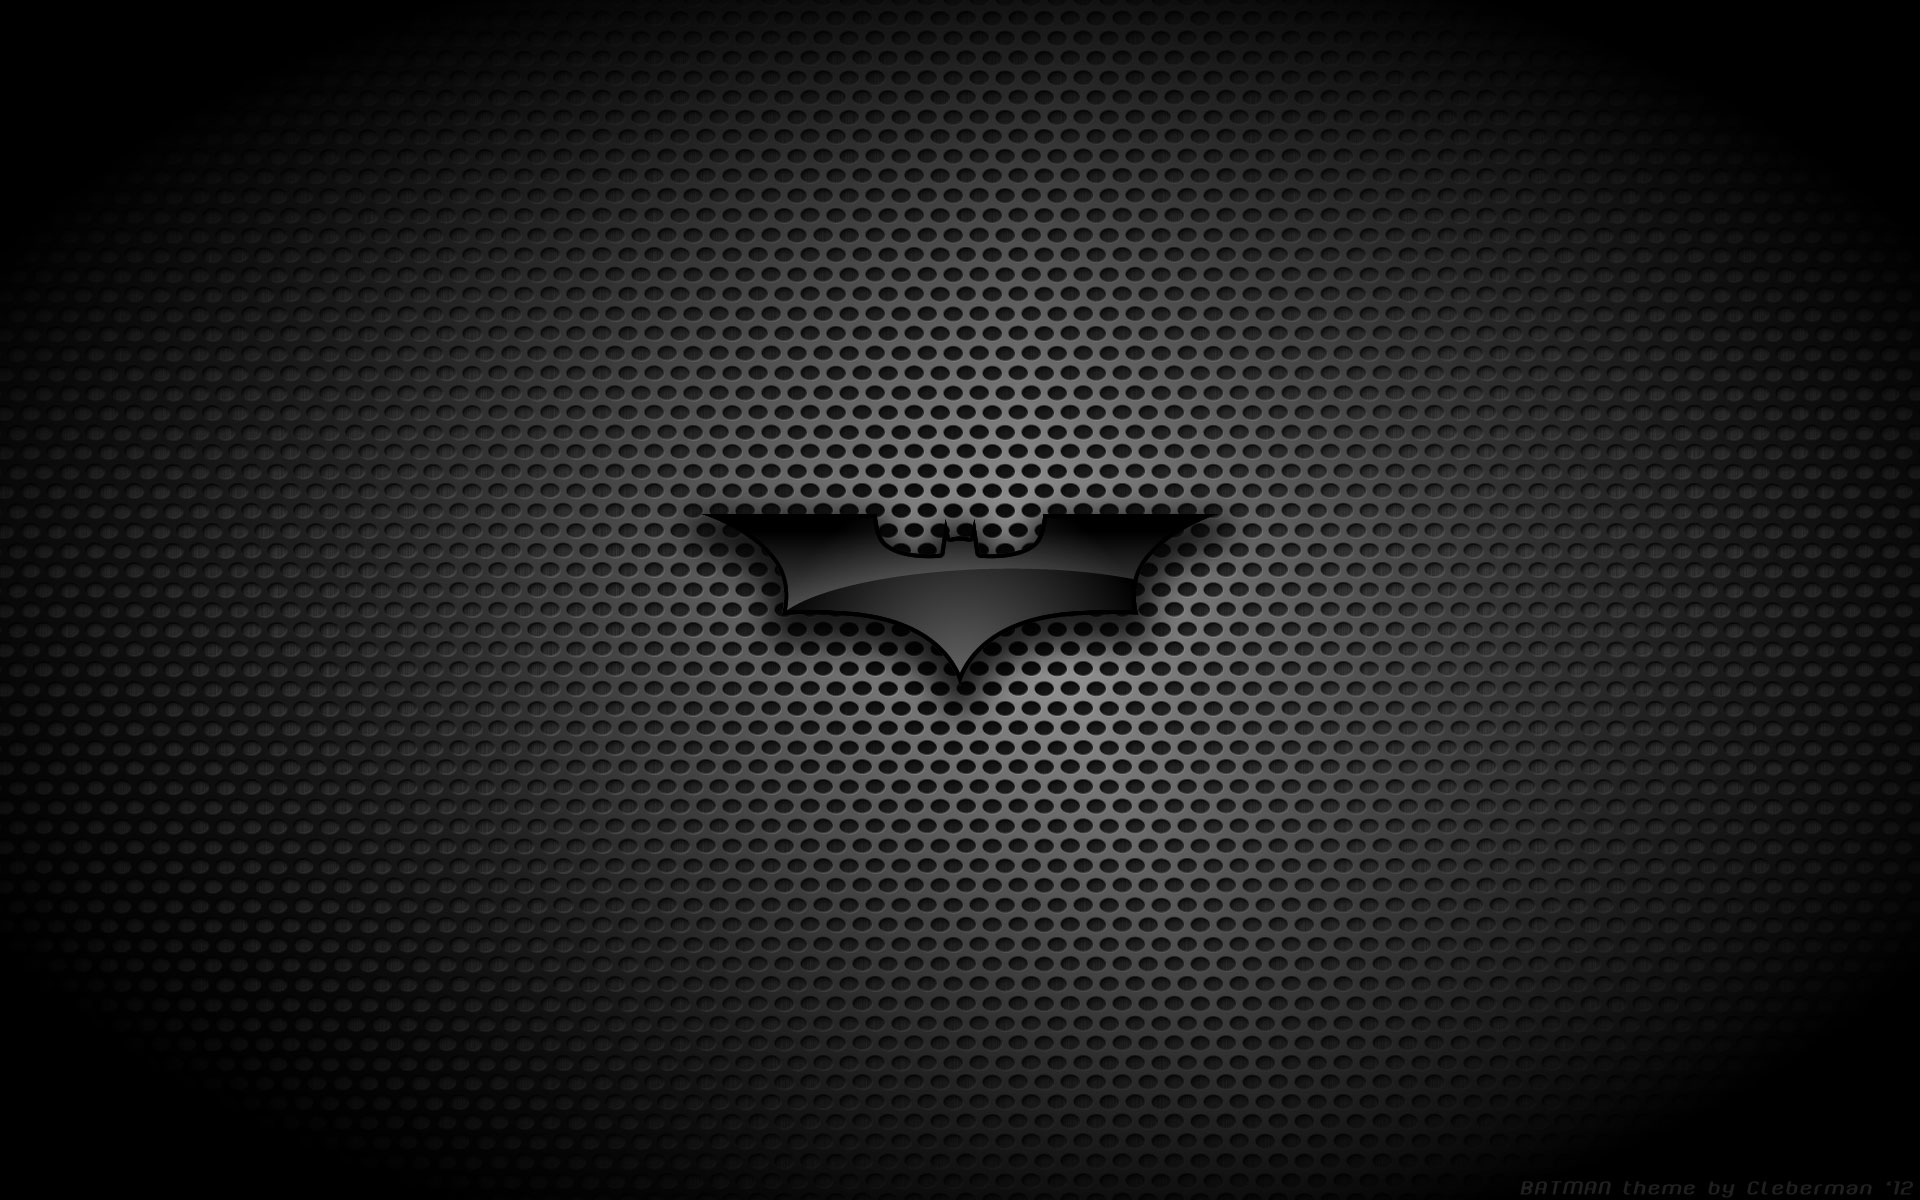 Lambang Batman Wallpaper Iphone